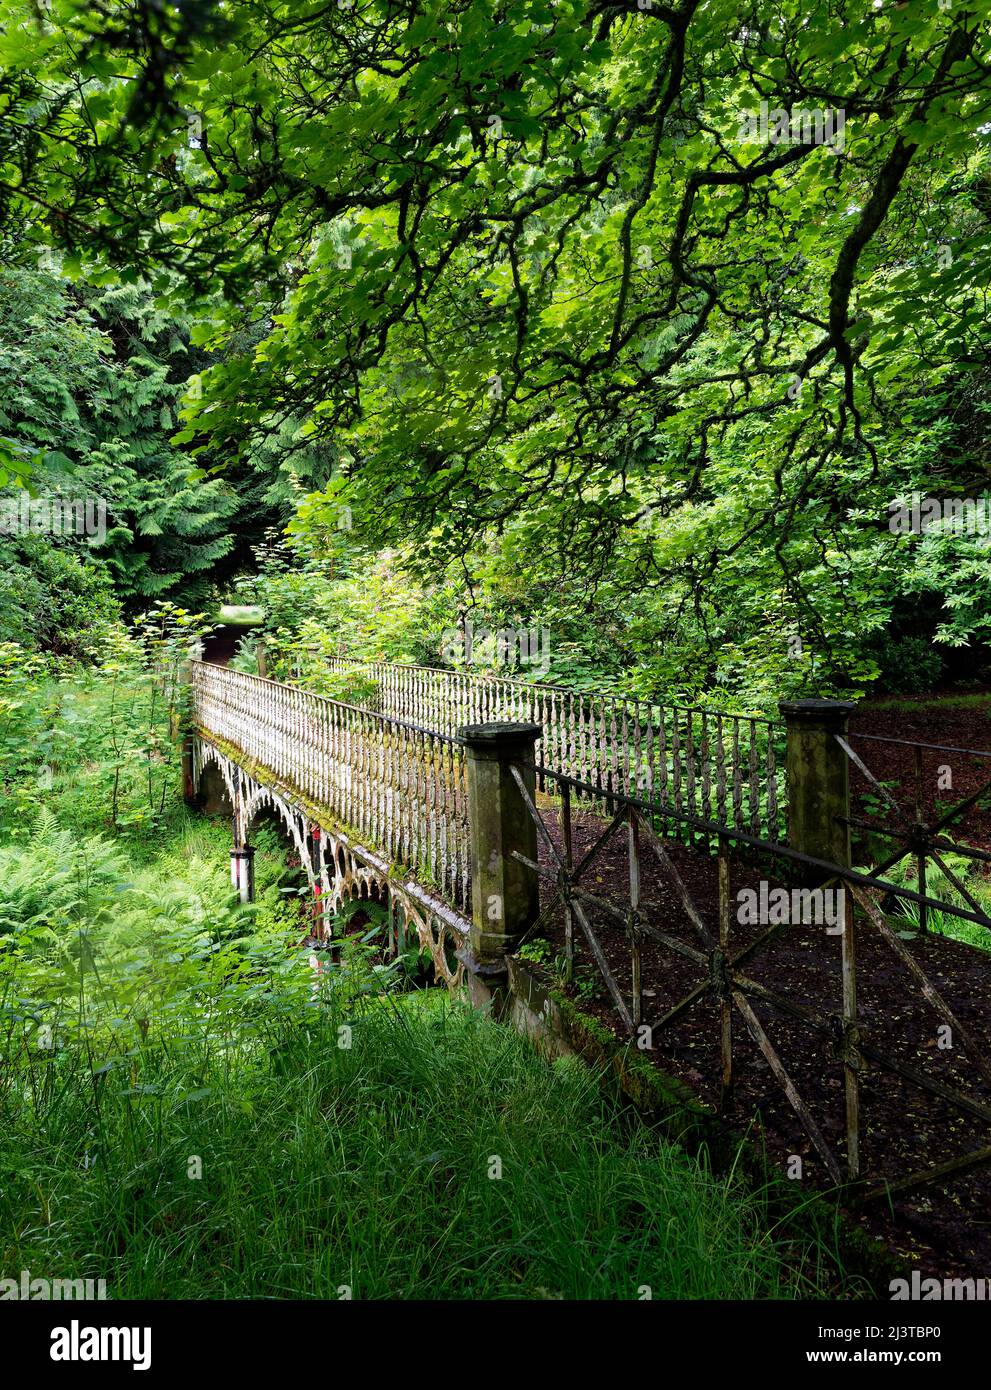 El antiguo puente peatonal de hierro de Stracathro House escondido en un denso bosque en Aberdeenshire, con árboles y helechos. Foto de stock